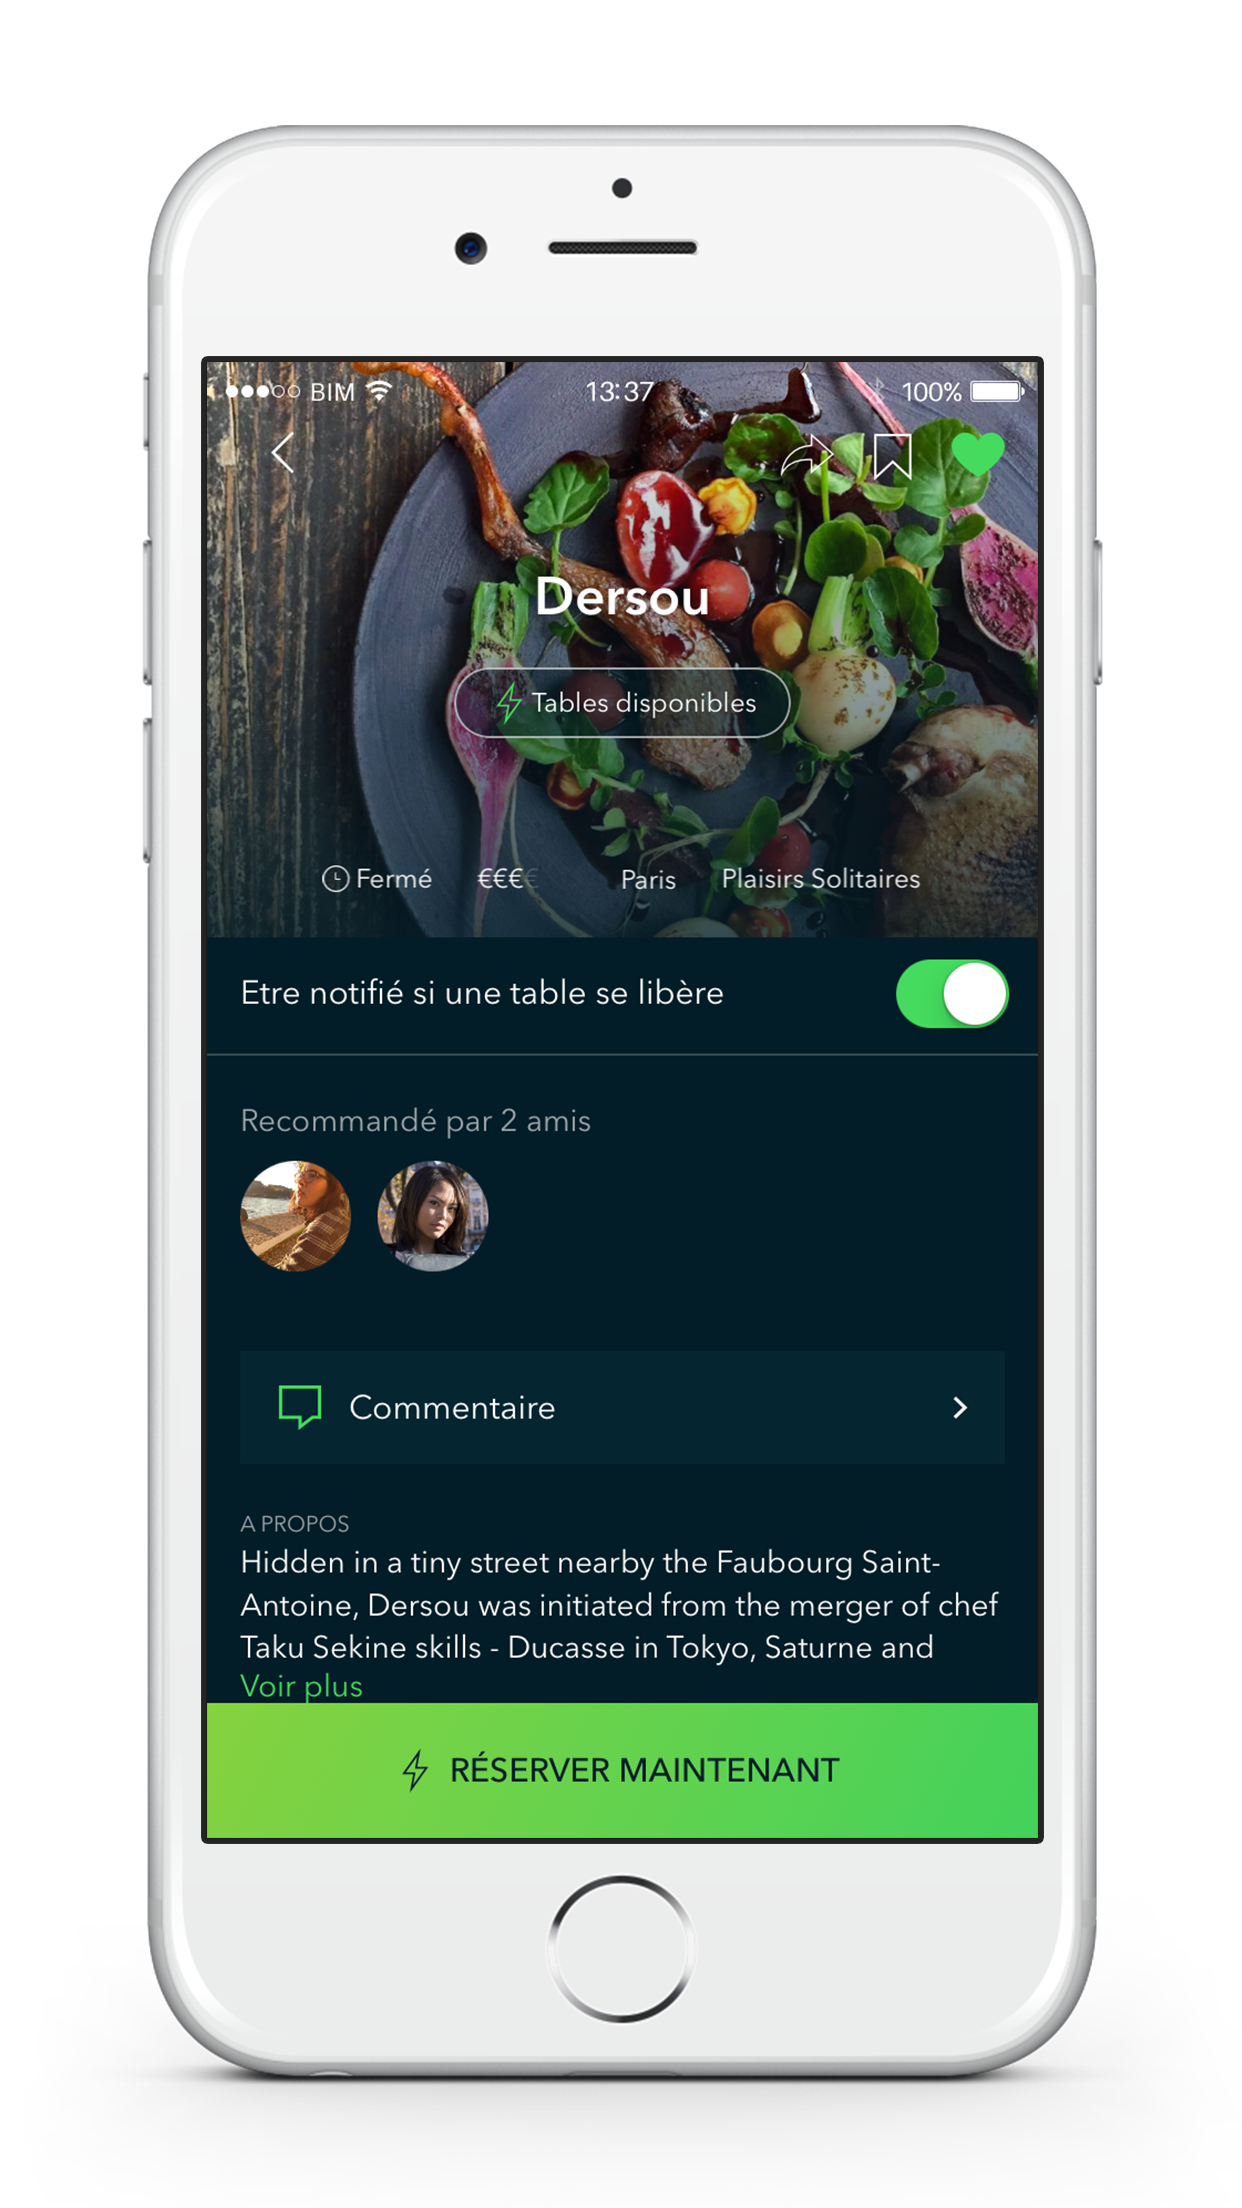 Réserver un restaurant sur Android avec BIM